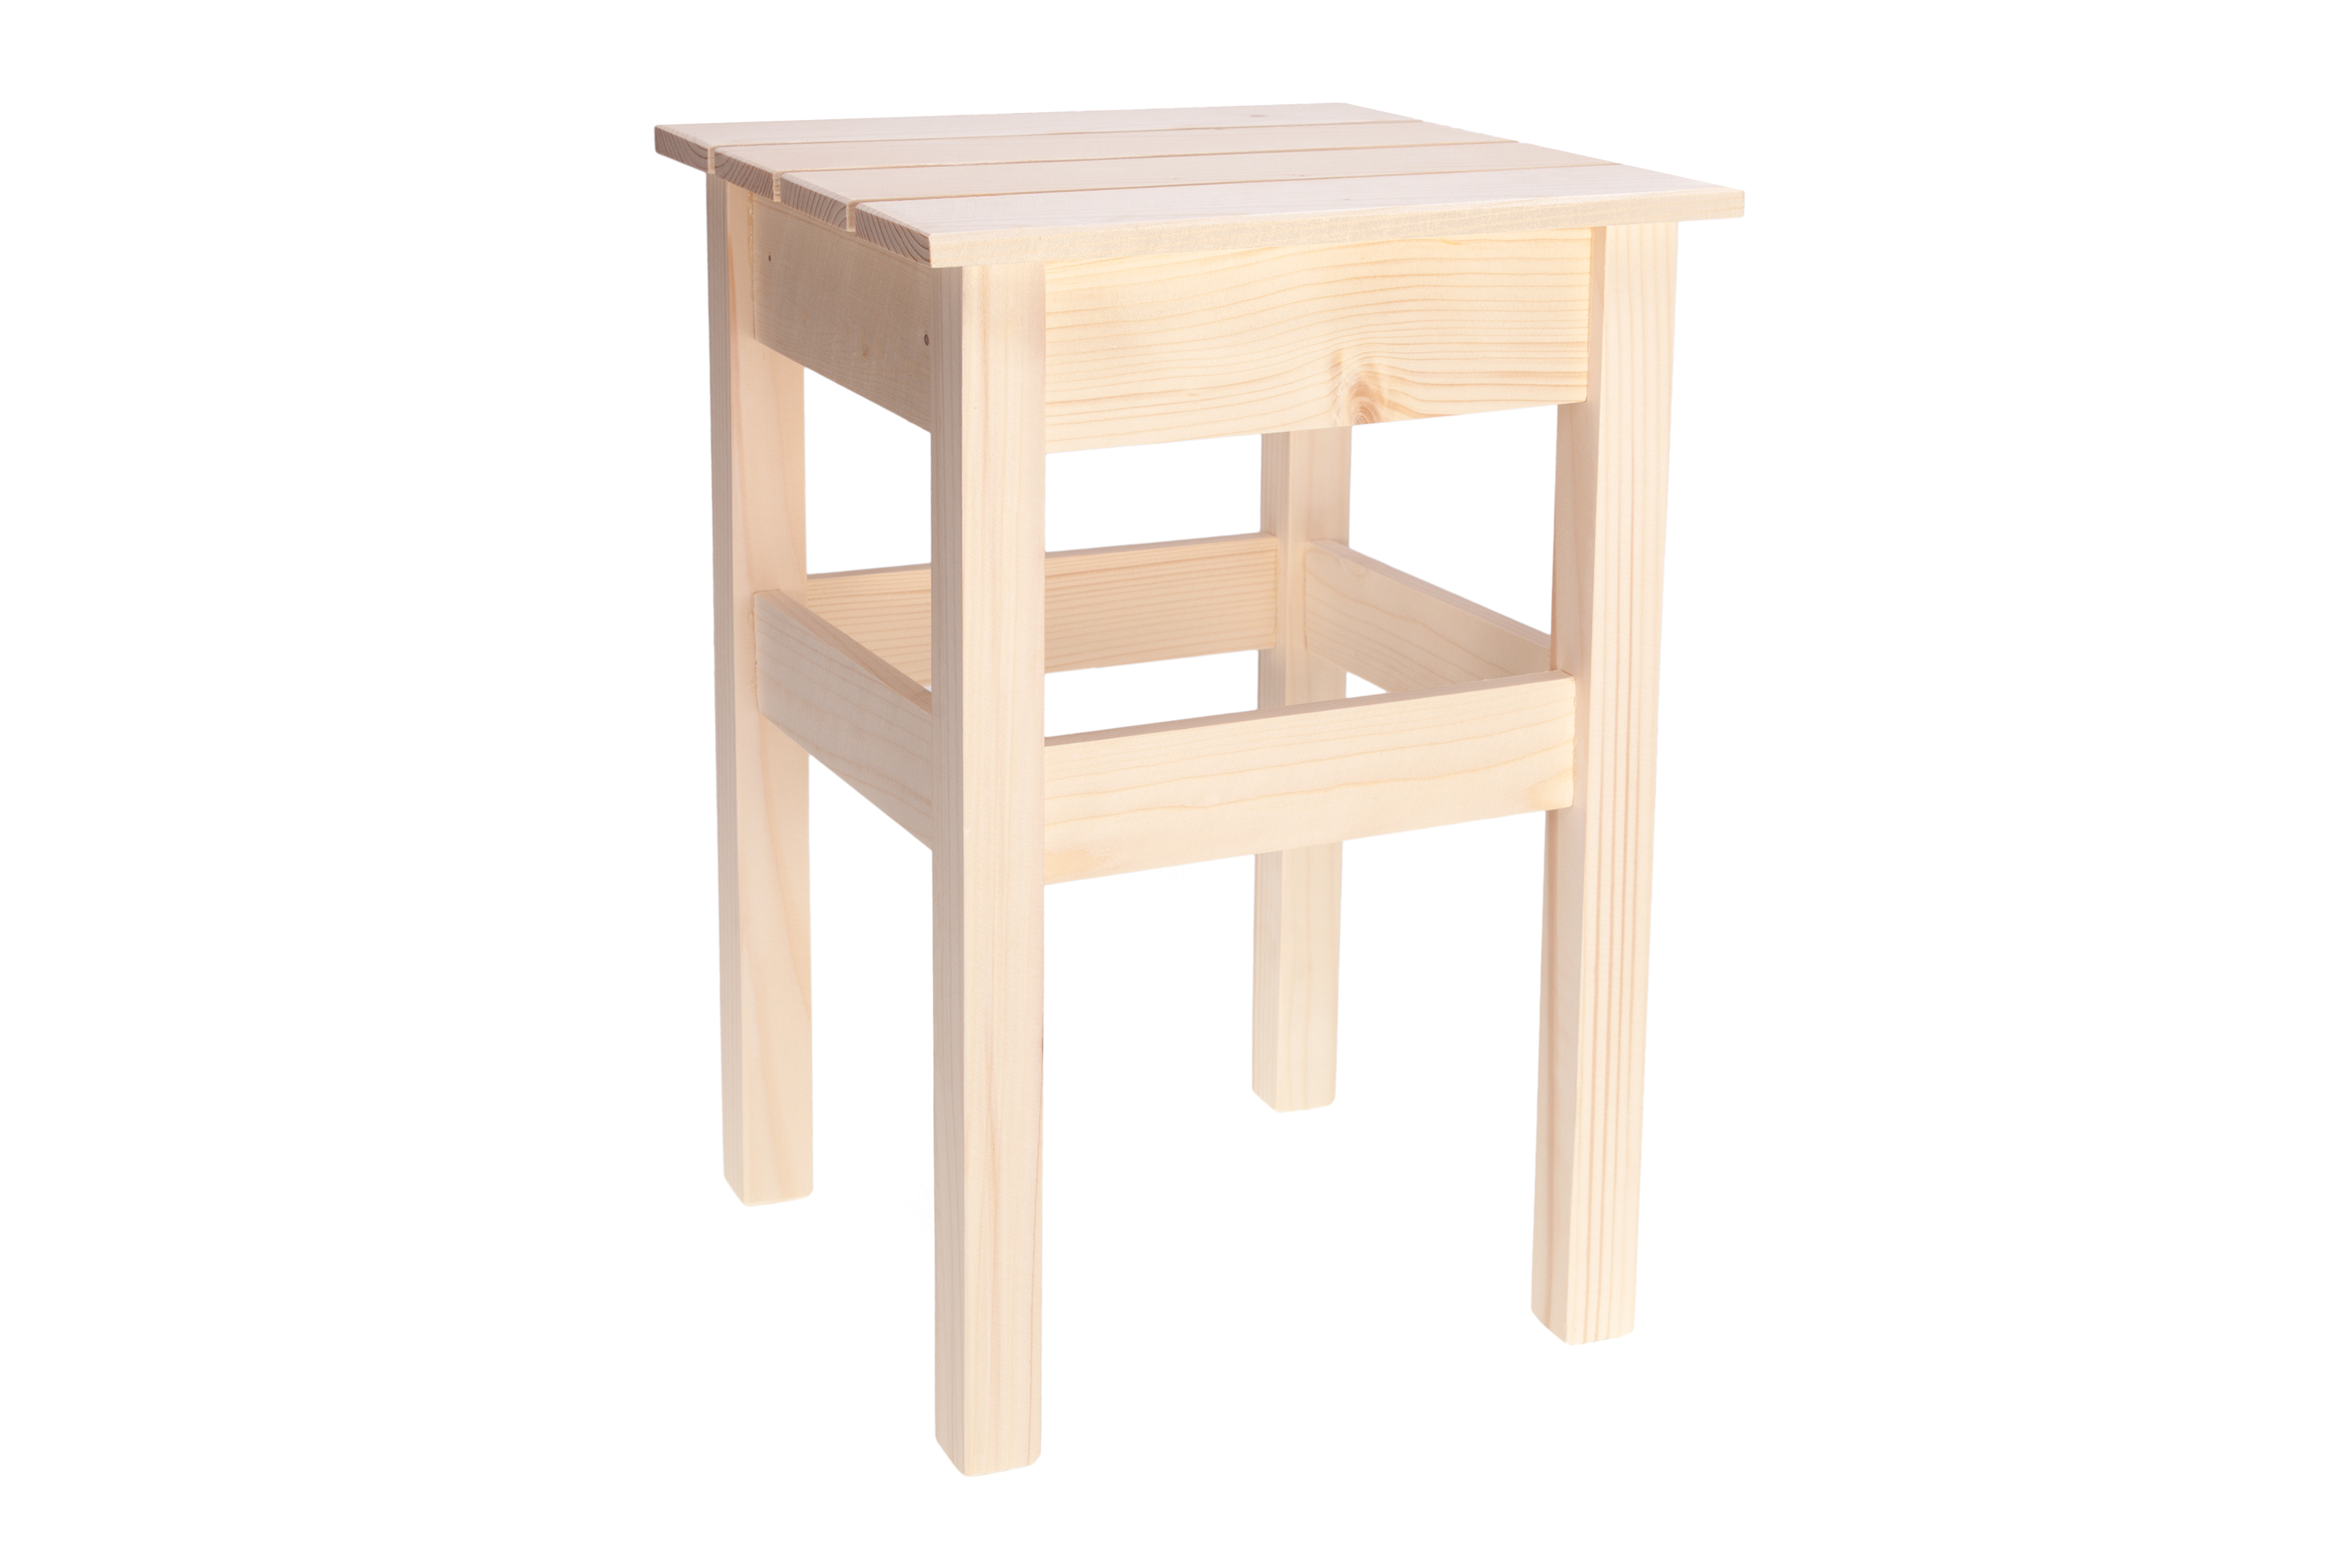 Drewniane krzesło EKO KT0002